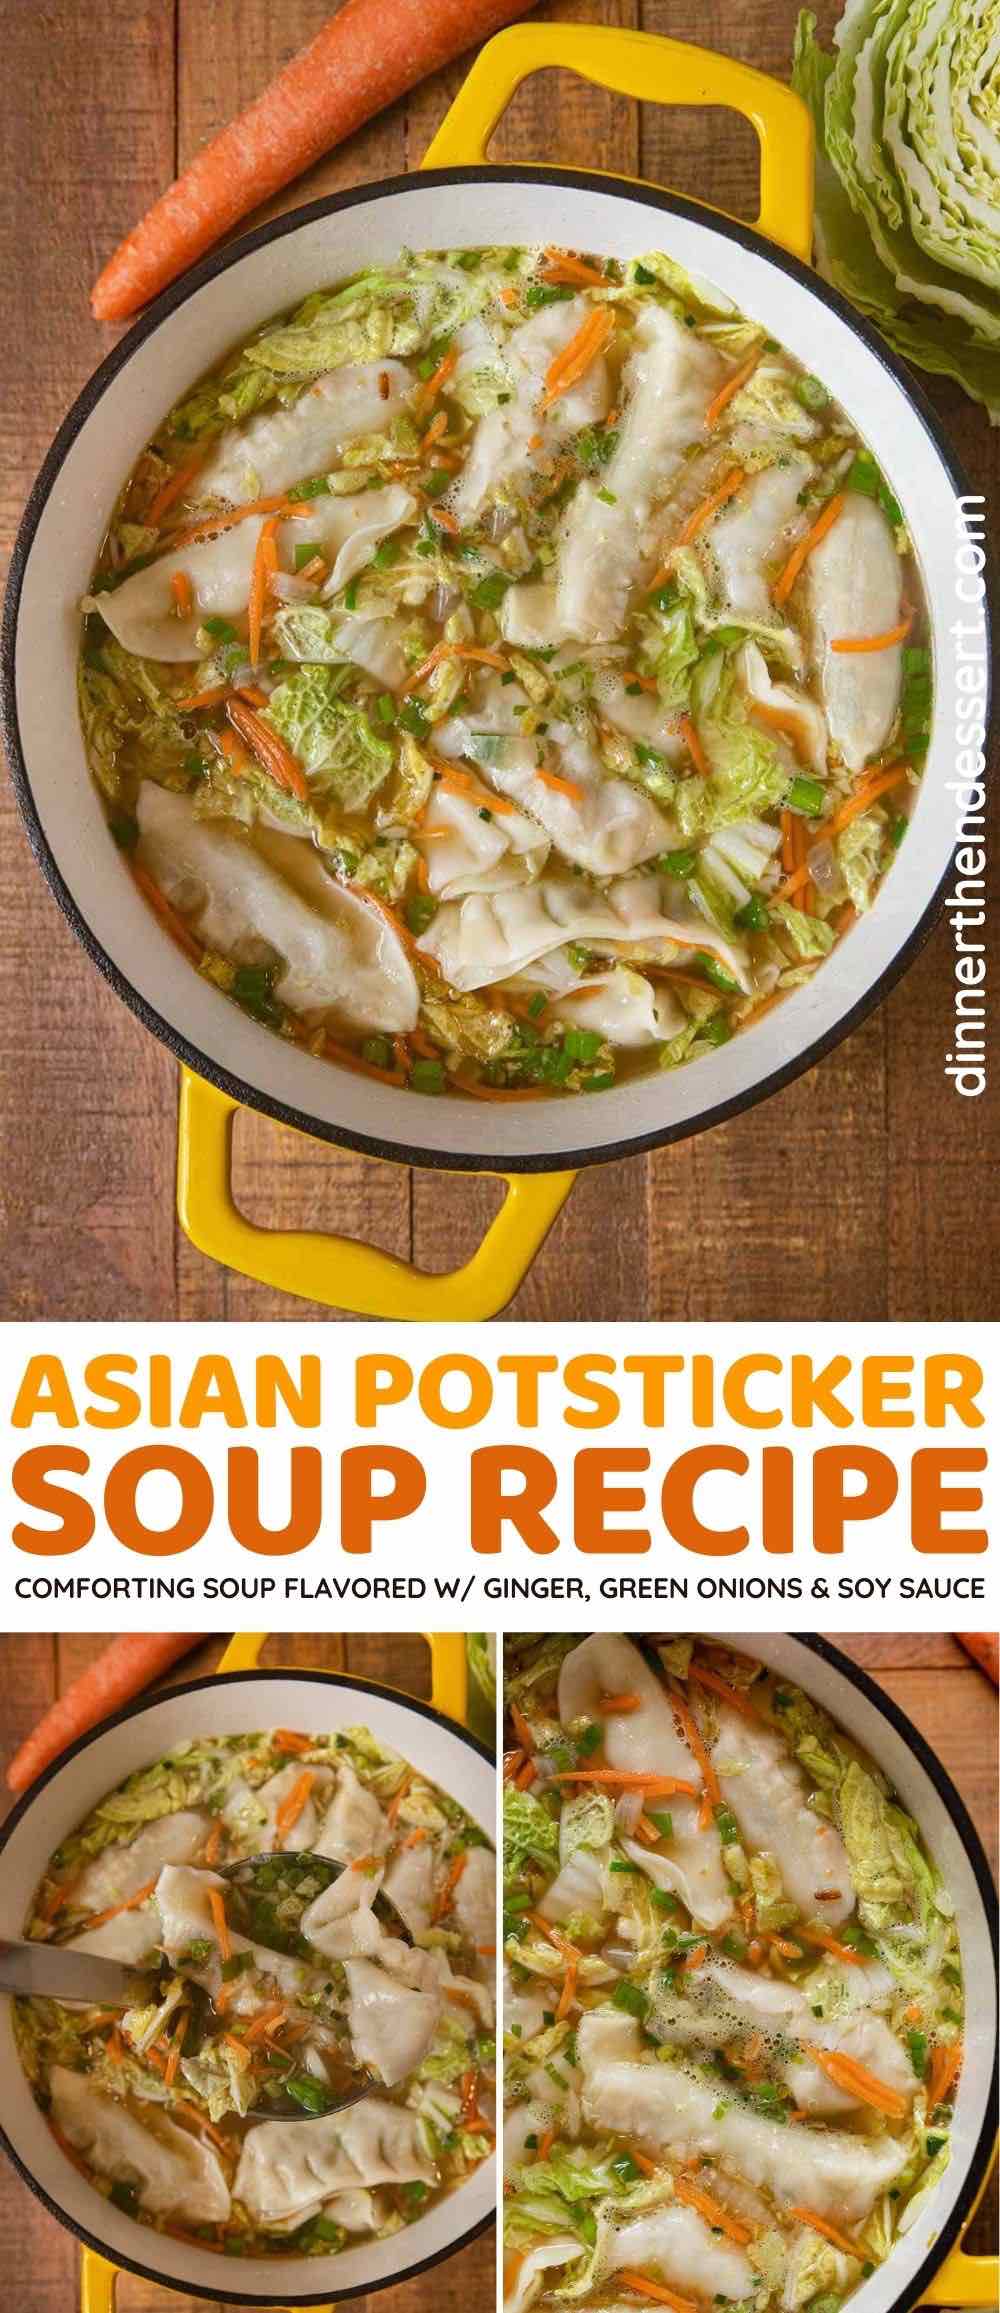 https://dinnerthendessert.com/wp-content/uploads/2021/01/Asian-Potsticker-Soup-L.jpg